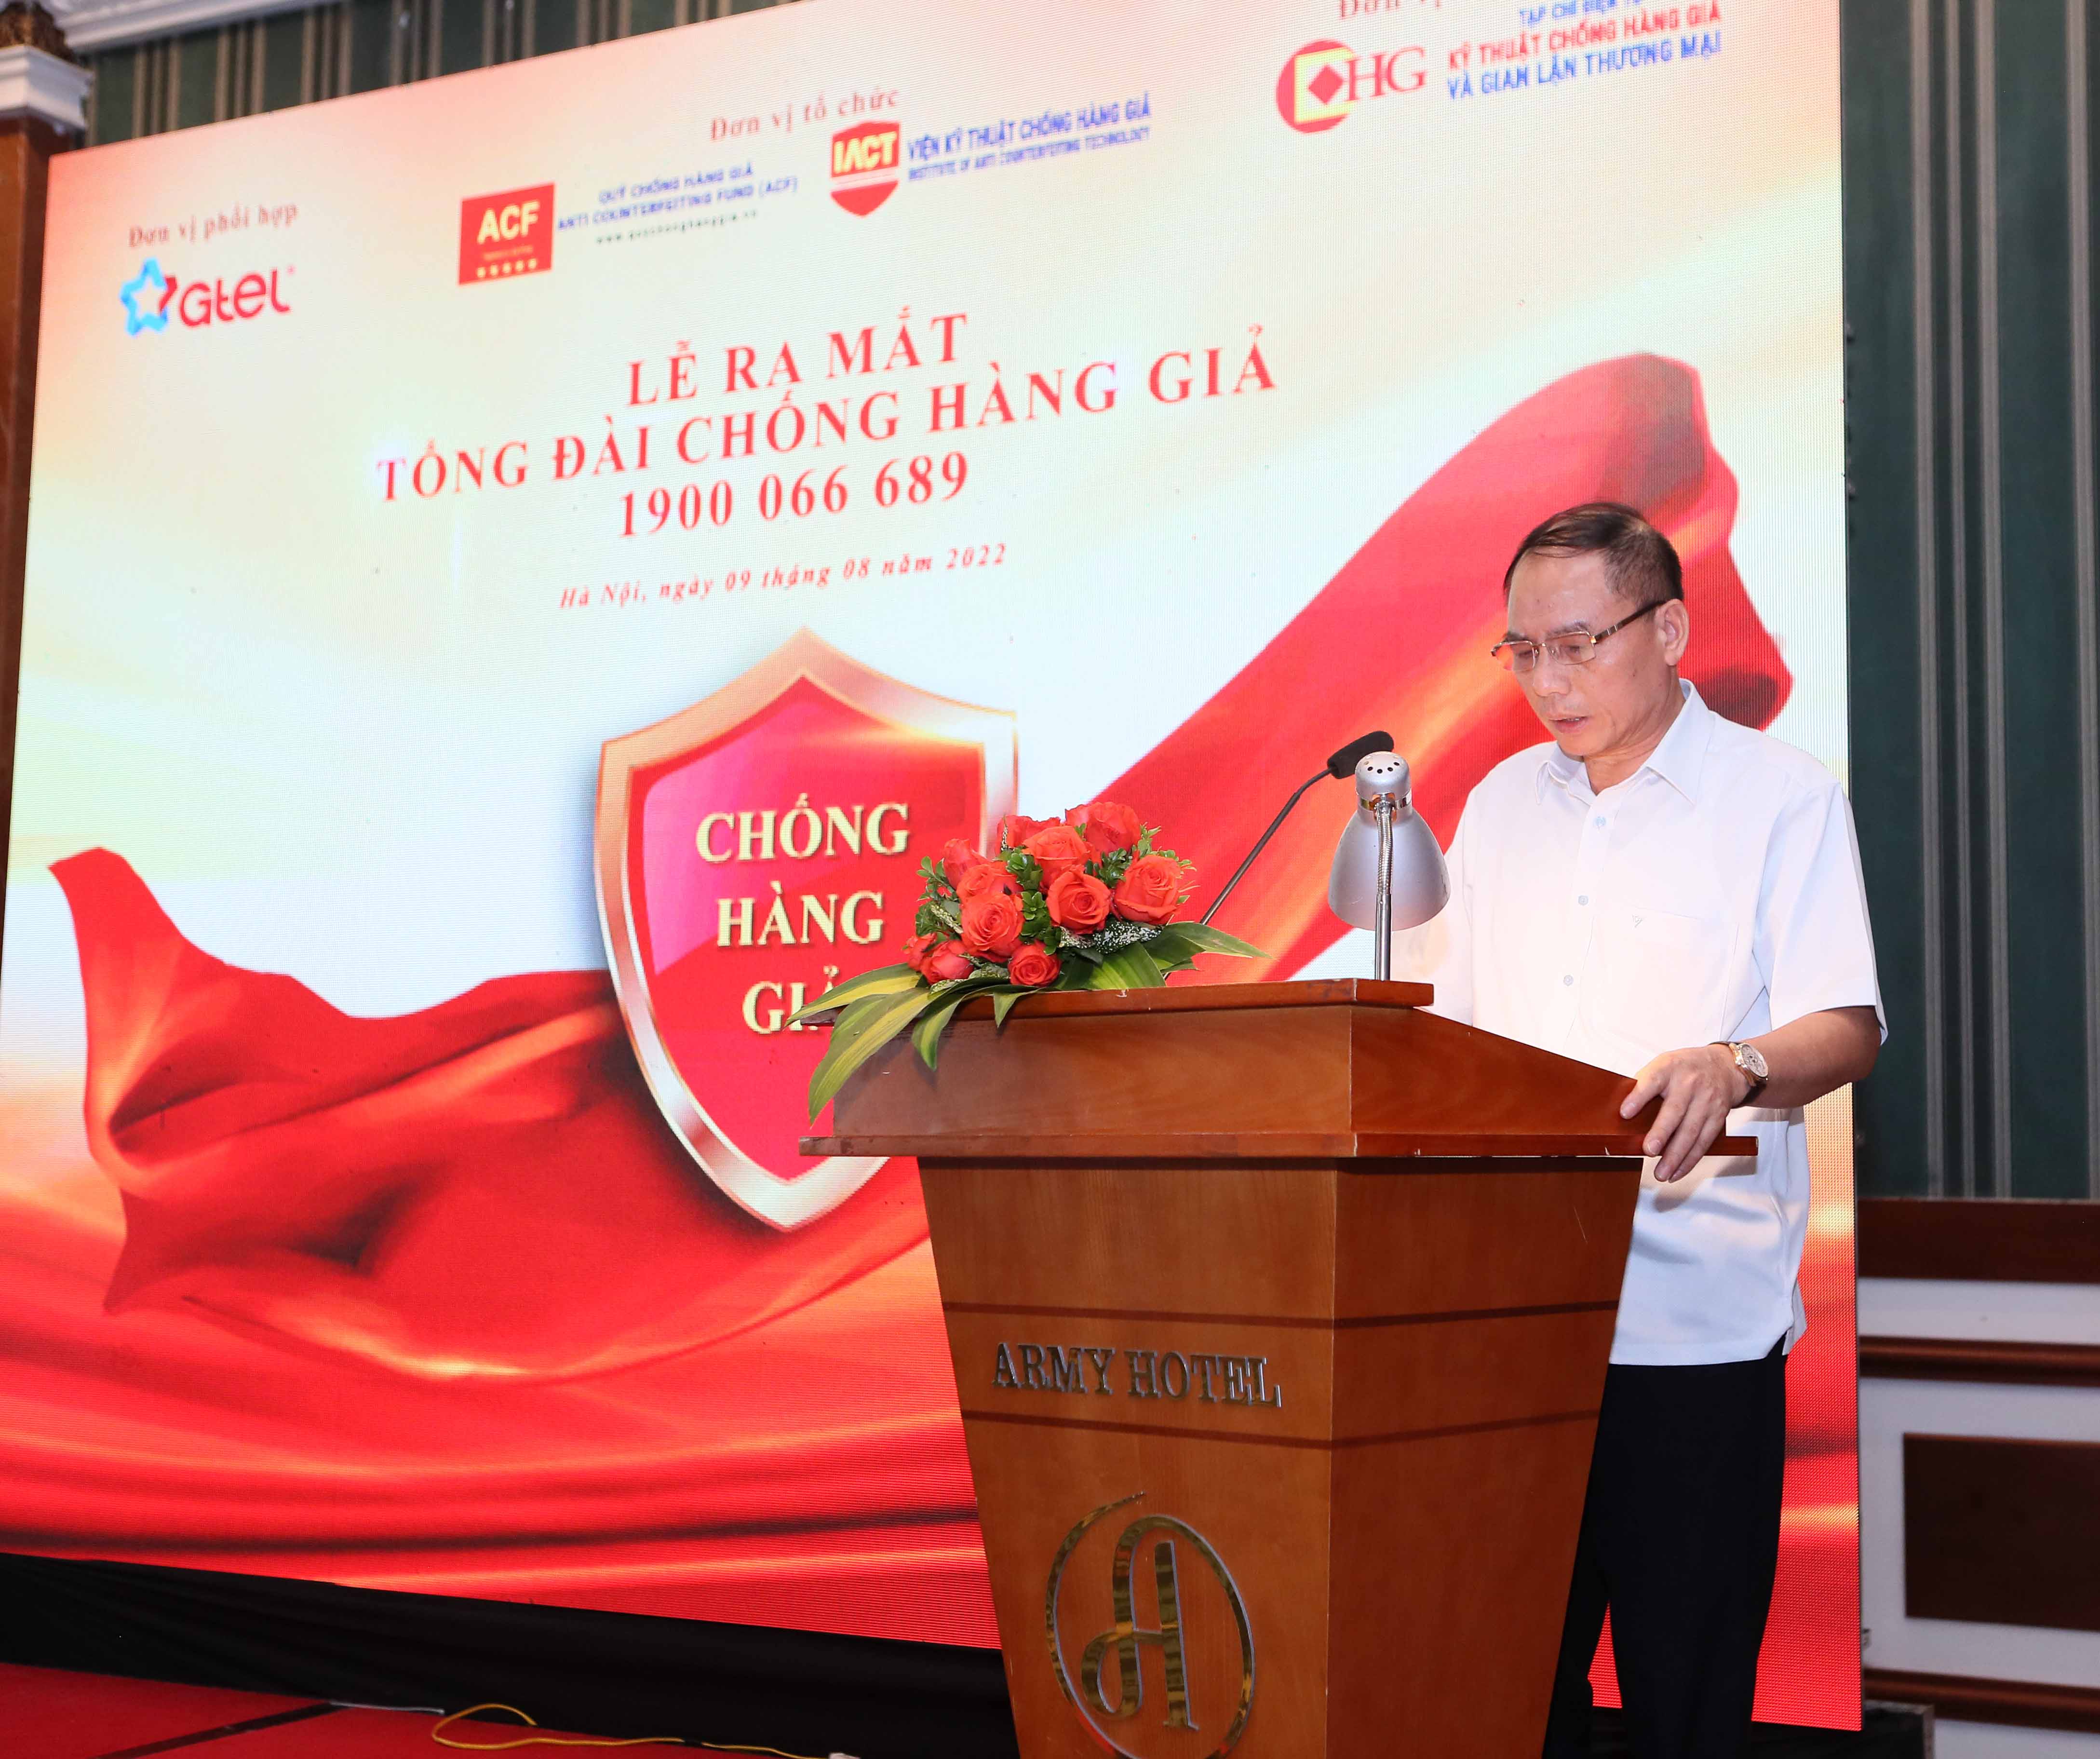 Ông Hồ Quang Thái - Phó Chủ tịch thường trực Hội đồng quản lý Quỹ Chống hàng giả, phát biểu tại buổi lễ